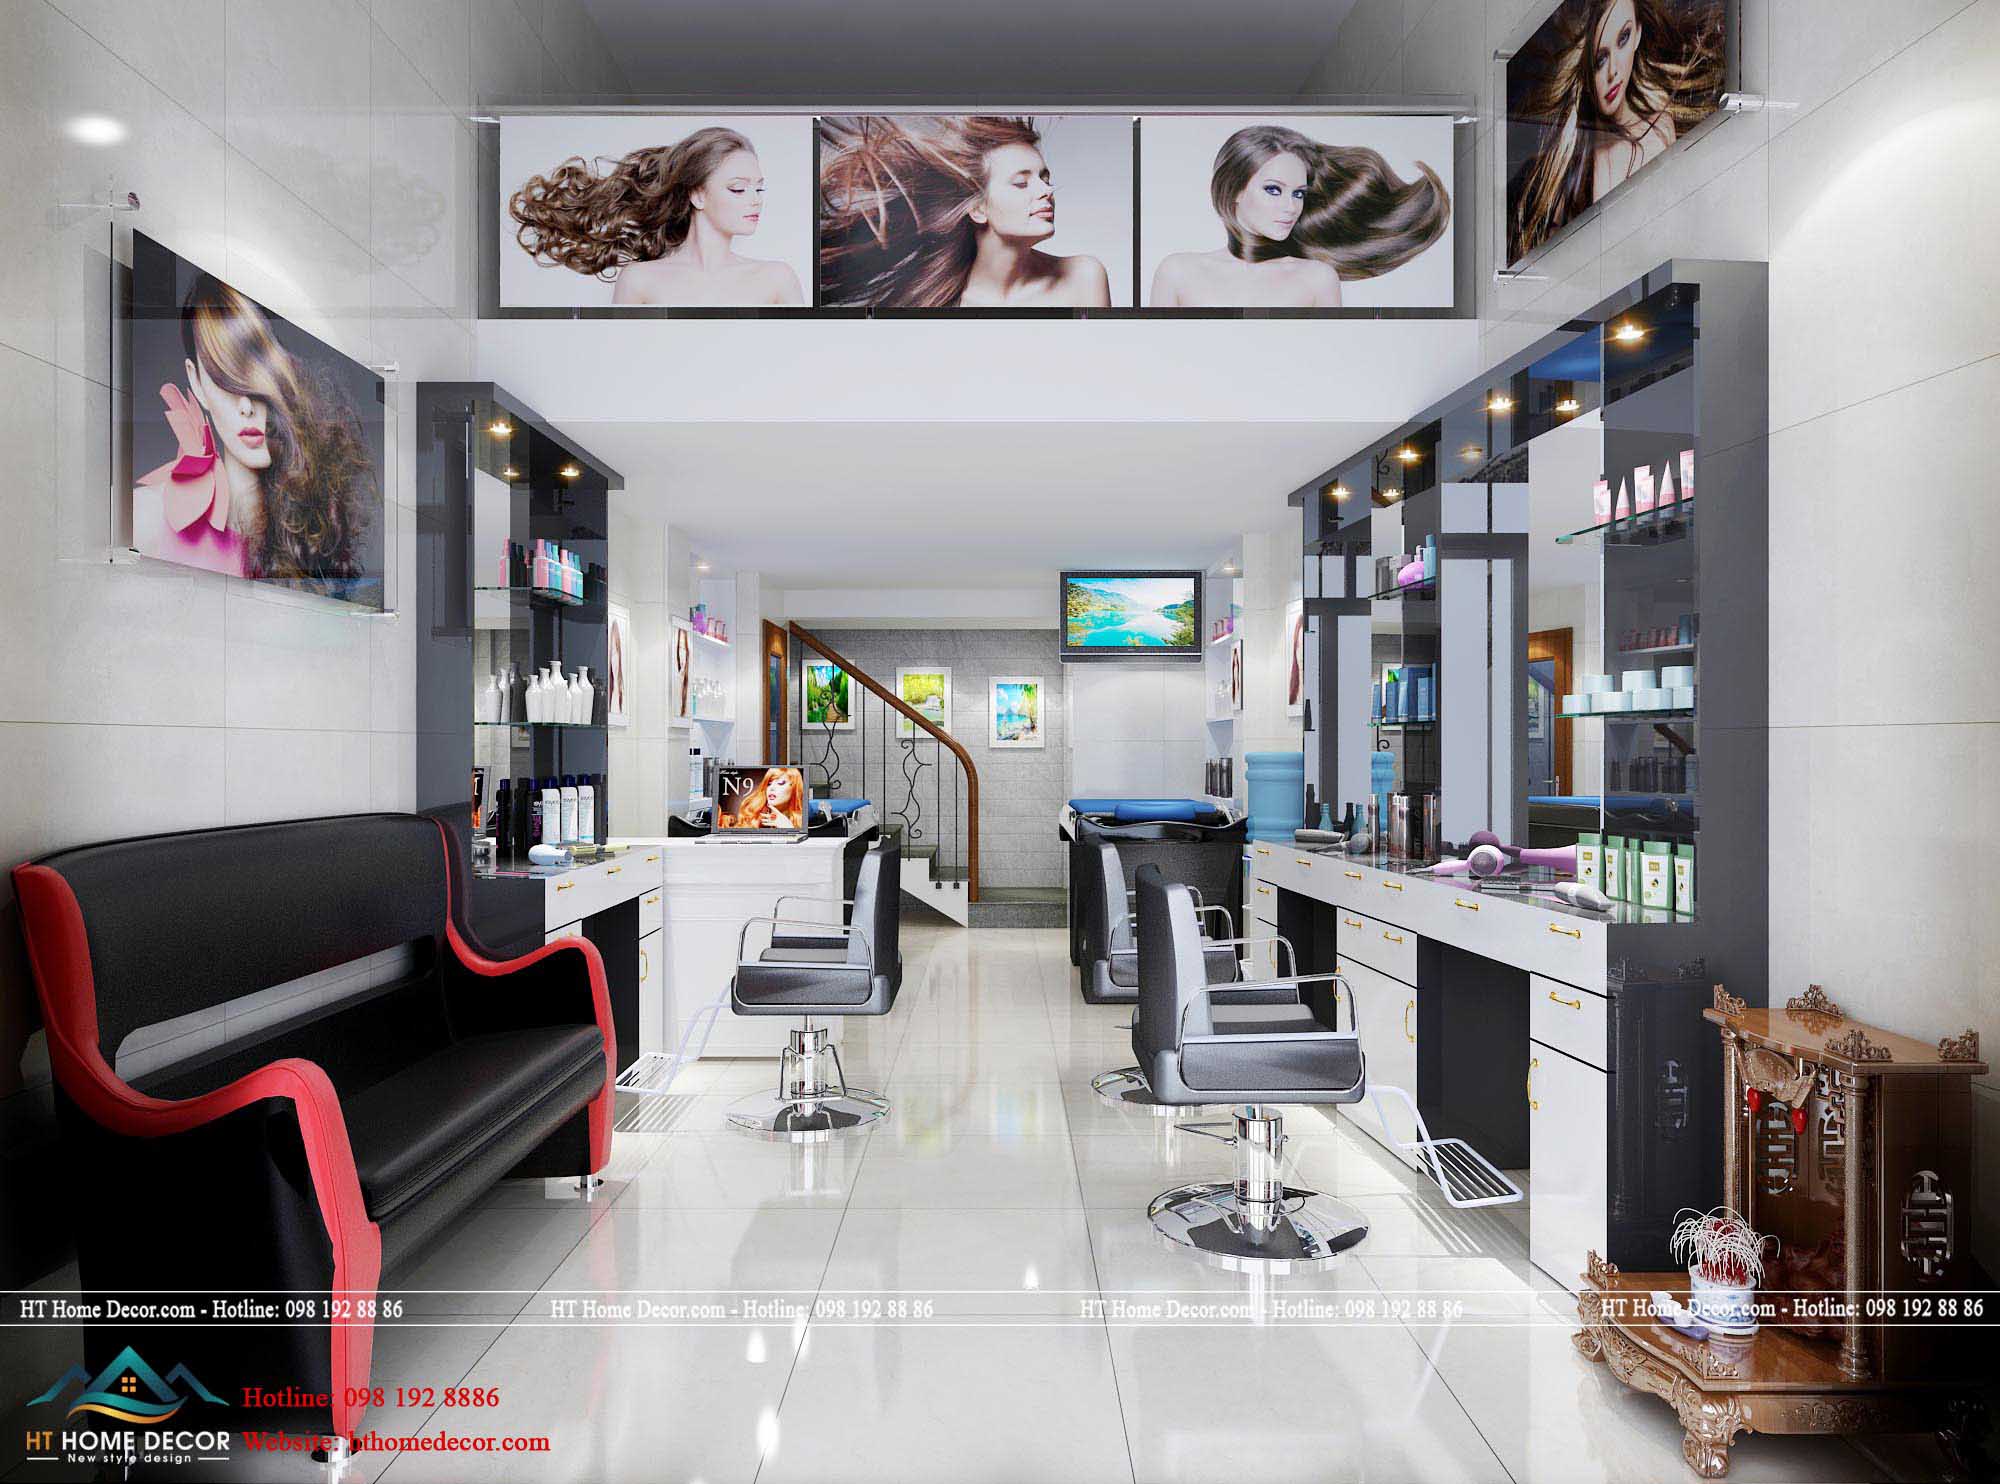 Không gian rộng rãi, với gam màu trắng đen chủ đạo đã mang đến một salon thời thượng nhất hiện nay. Các kiểu tóc được trưng bày khắp nơi cho khách hàng dễ dàng có thêm sự lựa chọn.